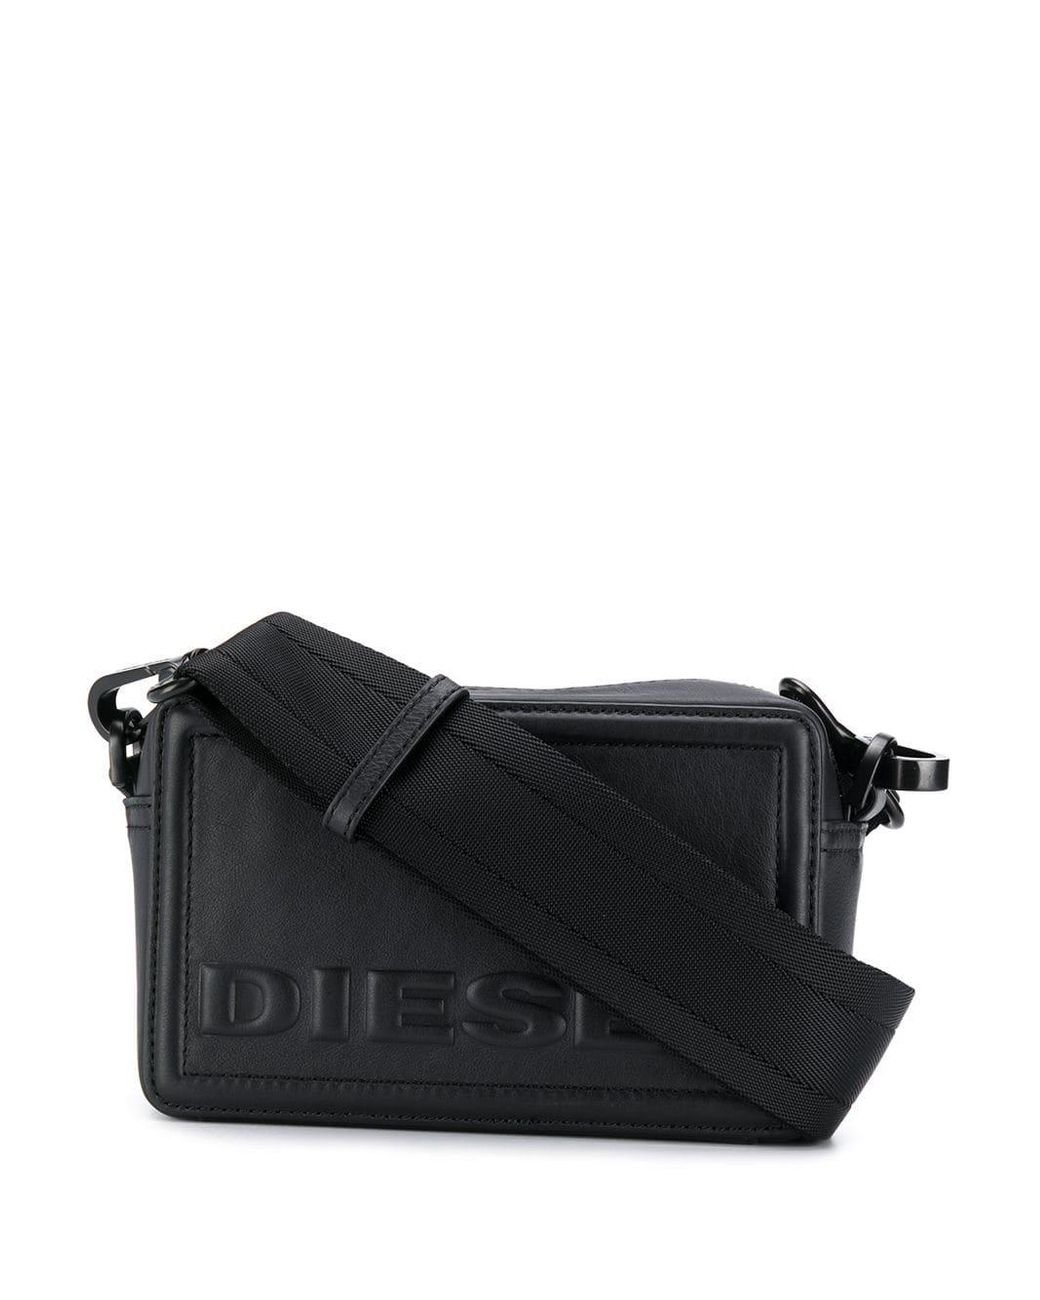 DIESEL Embossed Logo Crossbody Bag in Black | Lyst Australia